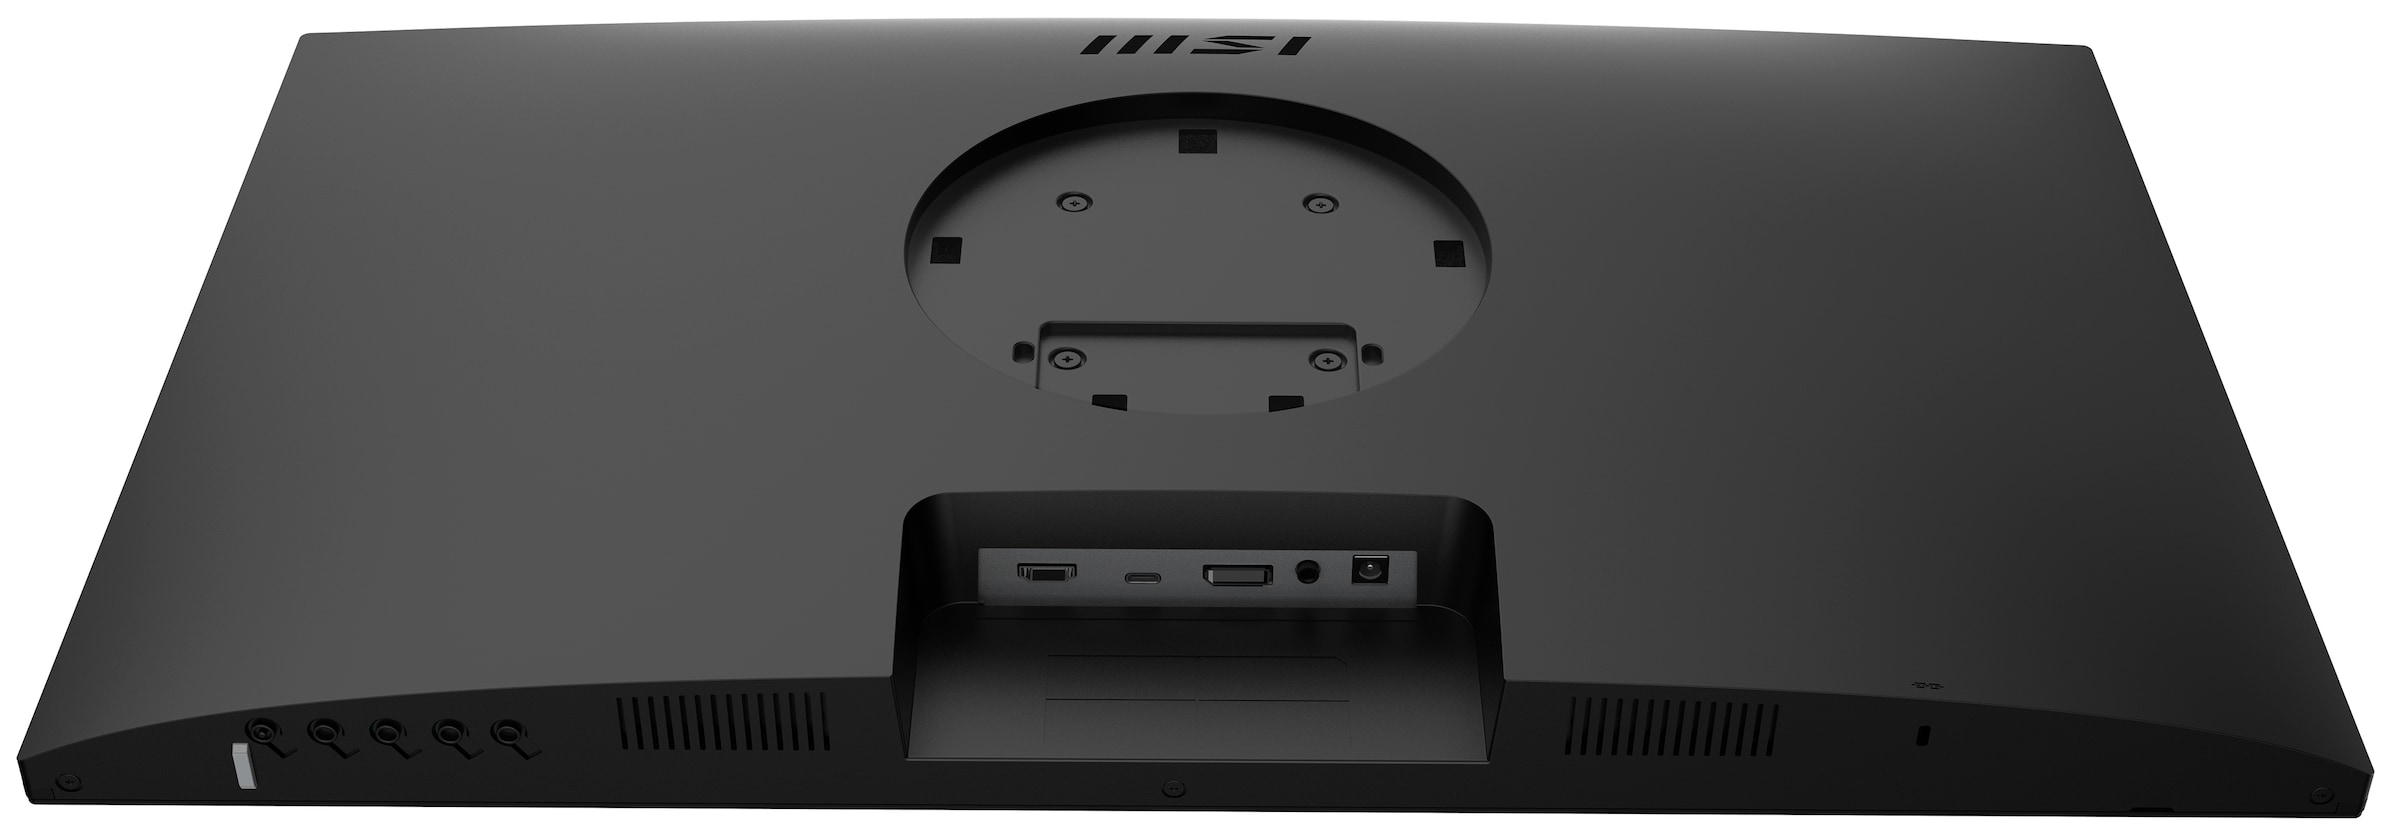 MSI LED-Monitor »Modern MD271QPDE«, 69 cm/27 Zoll, 2560 x 1440 px, WQHD, 5 ms Reaktionszeit, 75 Hz, 3 Jahre Herstellergarantie, höhenverstellbar, USB-C